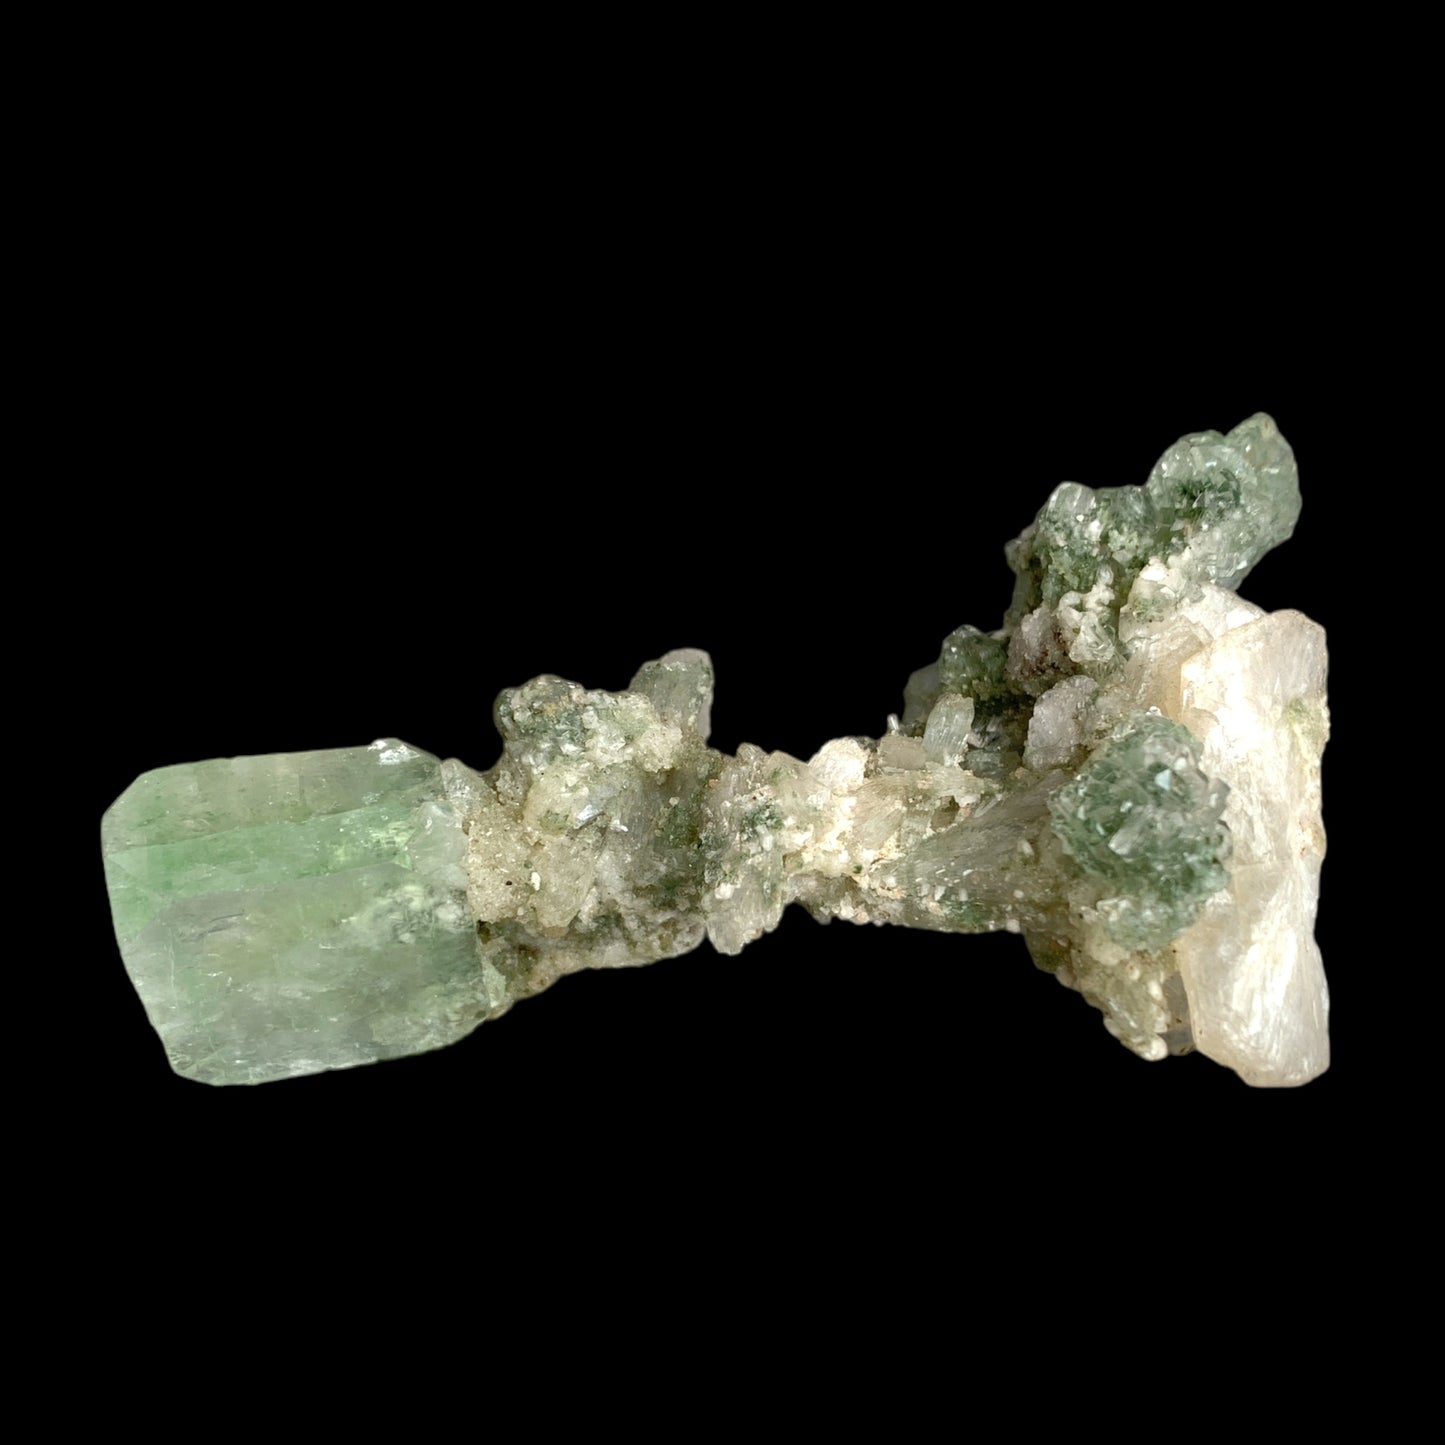 #1 Green Apophyllite w Stilbite - 70g - 3.5 x 2.5 x 2 inch - India - Specimen 2